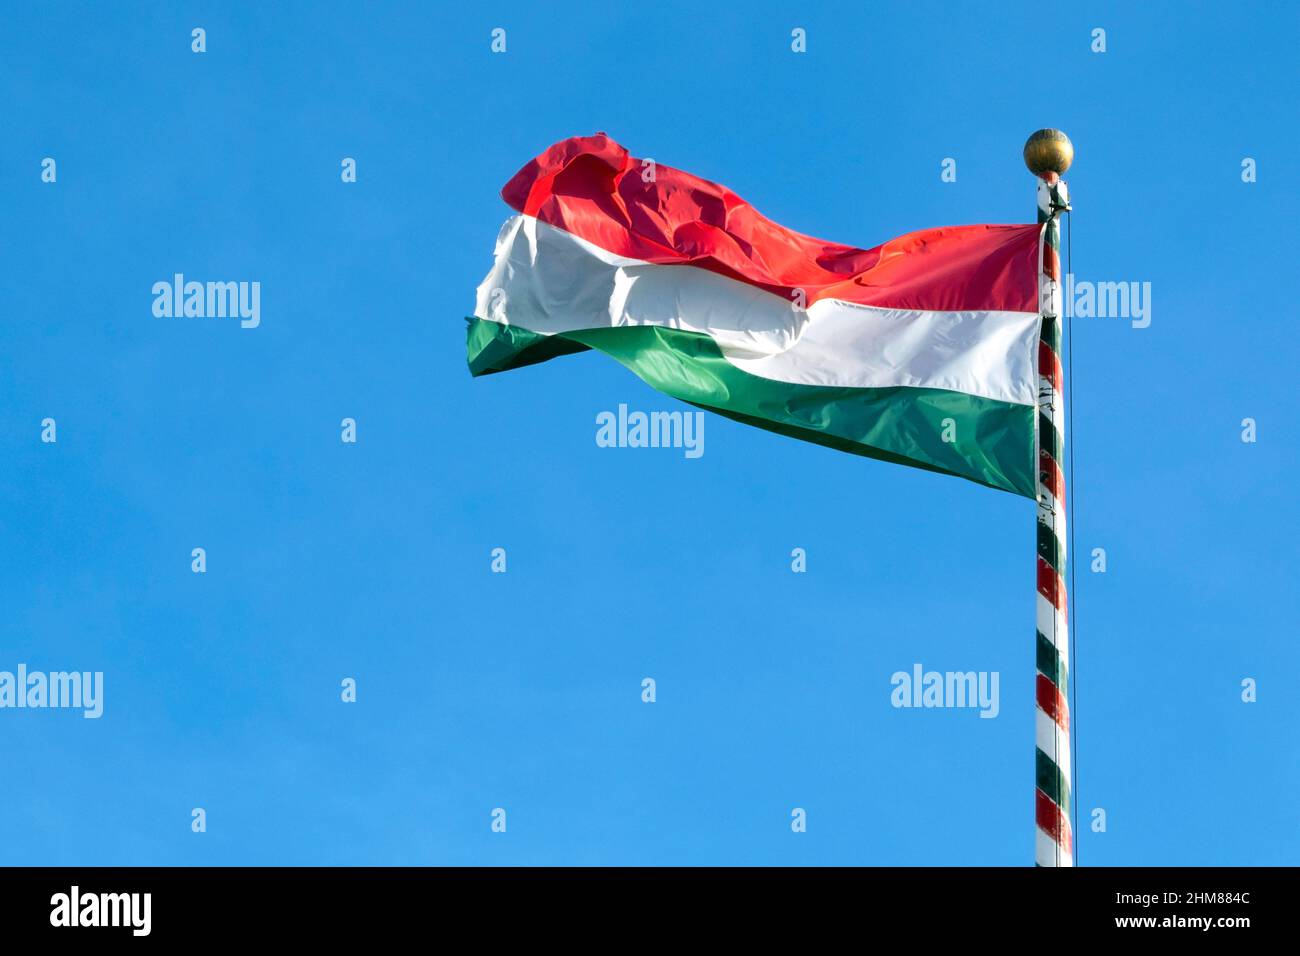 Bandera húngara o bandera de Hungría ondeando contra el cielo azul, espacio para texto Foto de stock